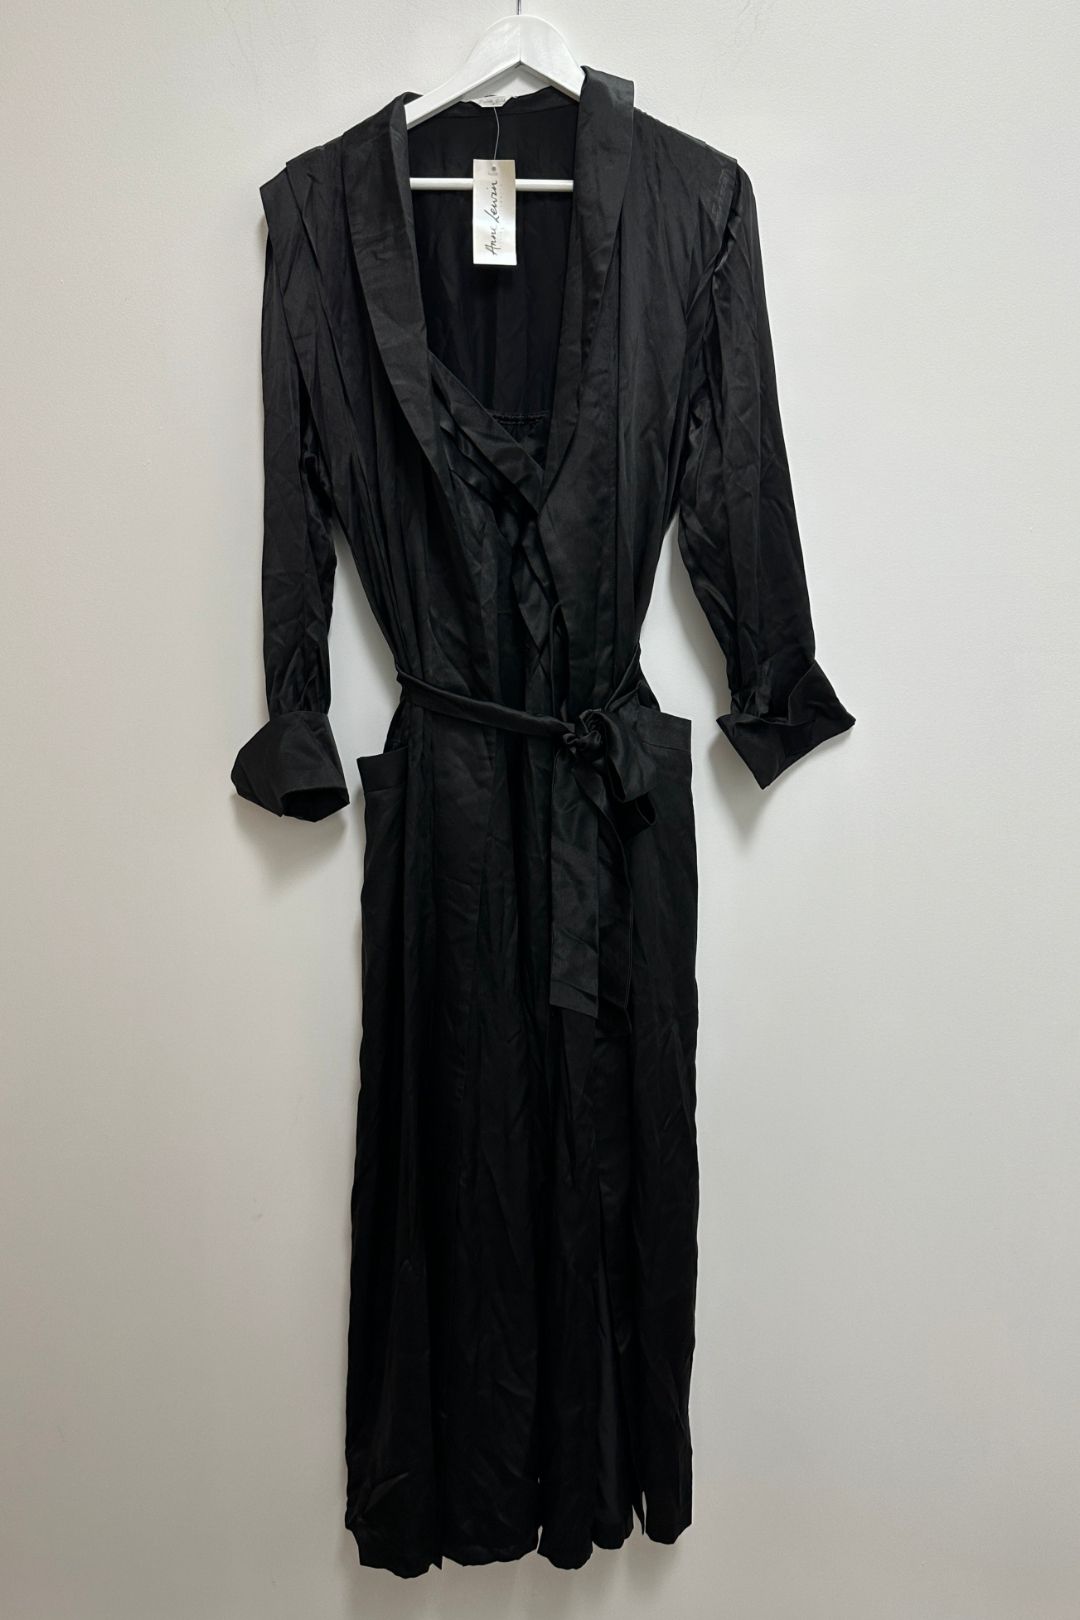 Anne Lewin Black Silk Negligee and Nightie Matching Set